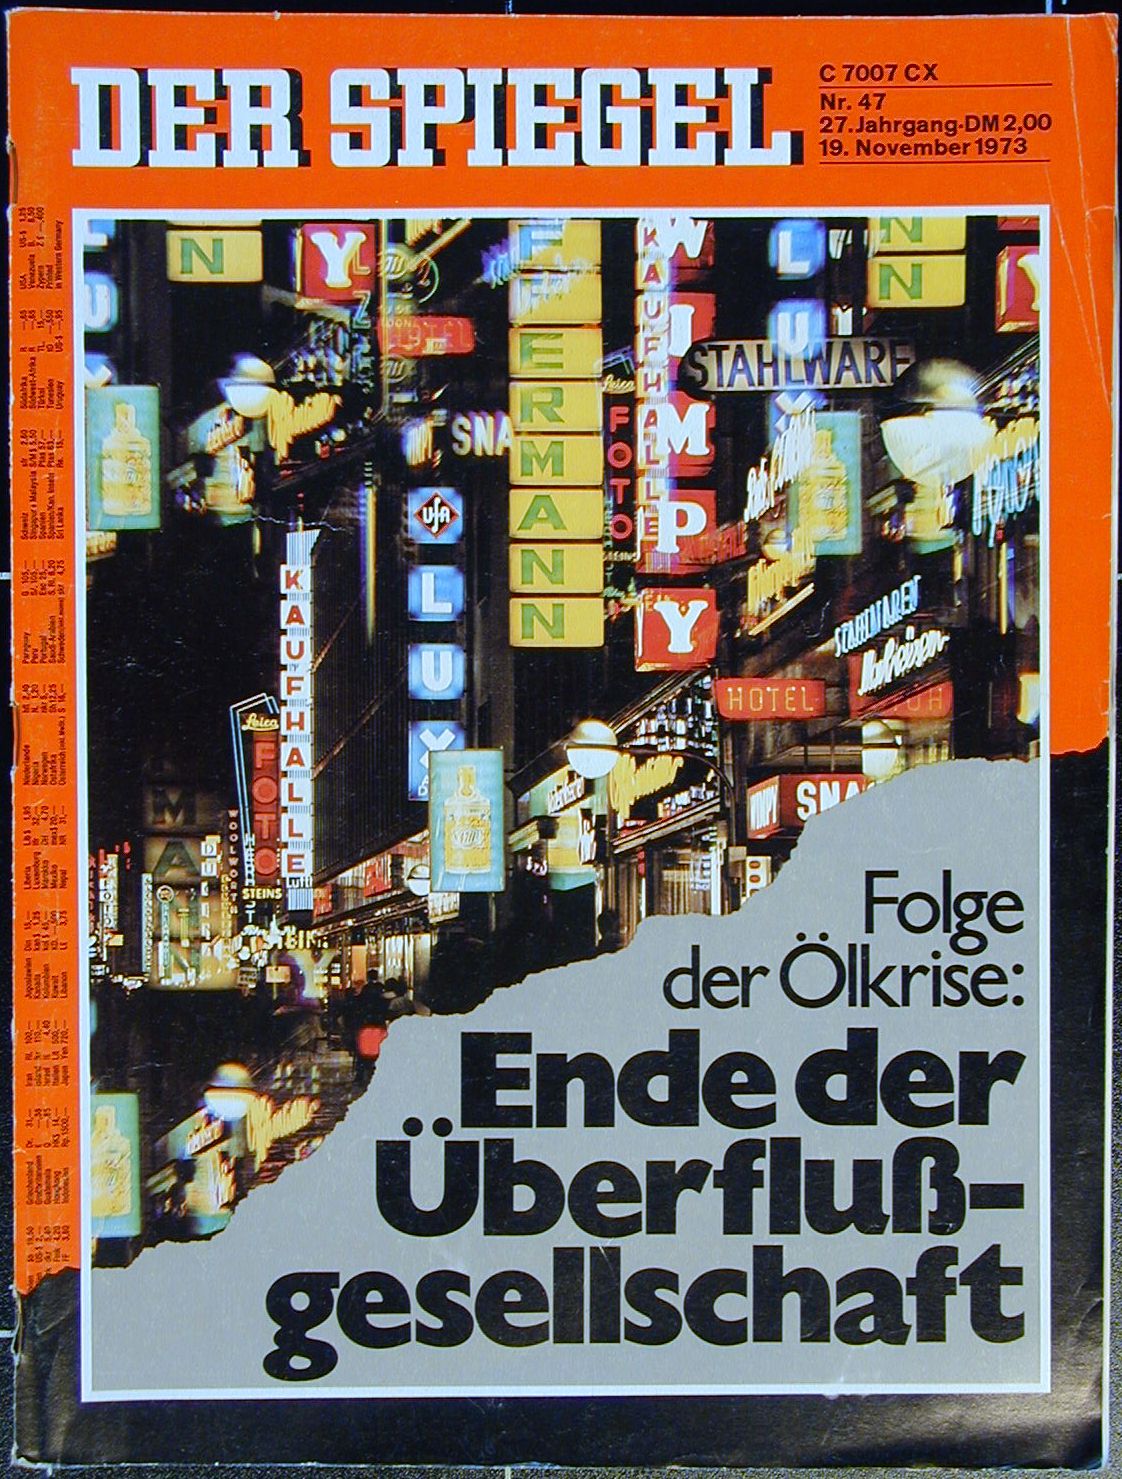 Vorderseite farbige Abbildung einer Fußgängerzone mit beleuchteten Reklametafeln; Schlagzeile: Folge der Ölkrise: Ende der Überflußgesellschaft.